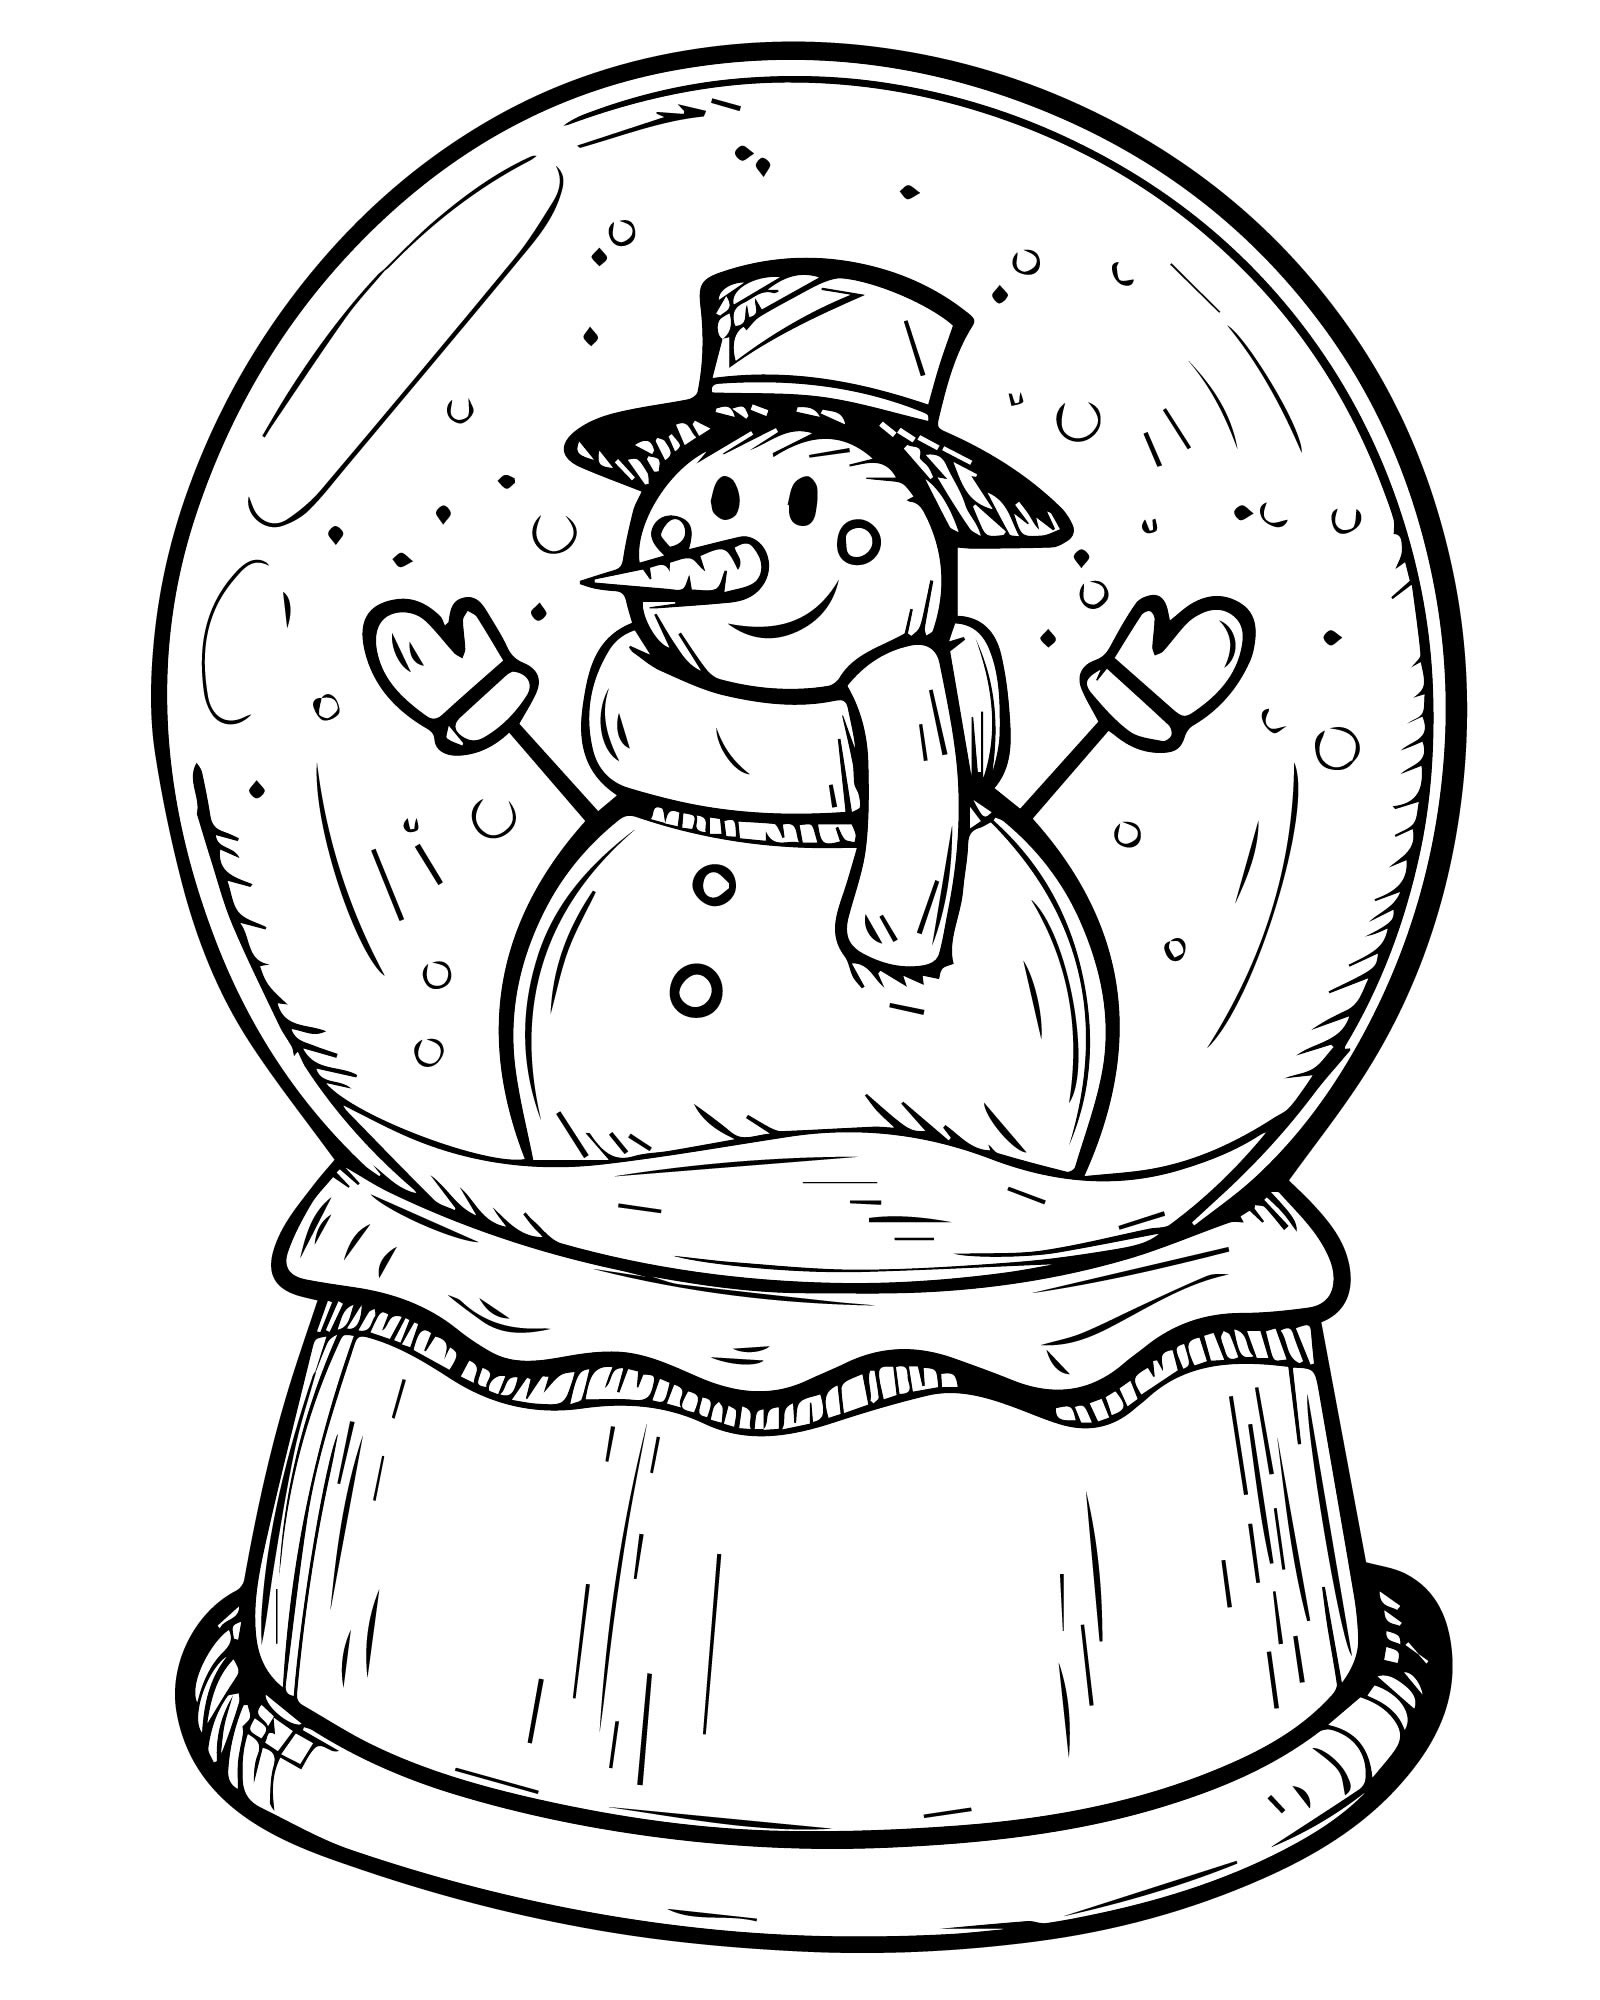 Snowman in balloon #10